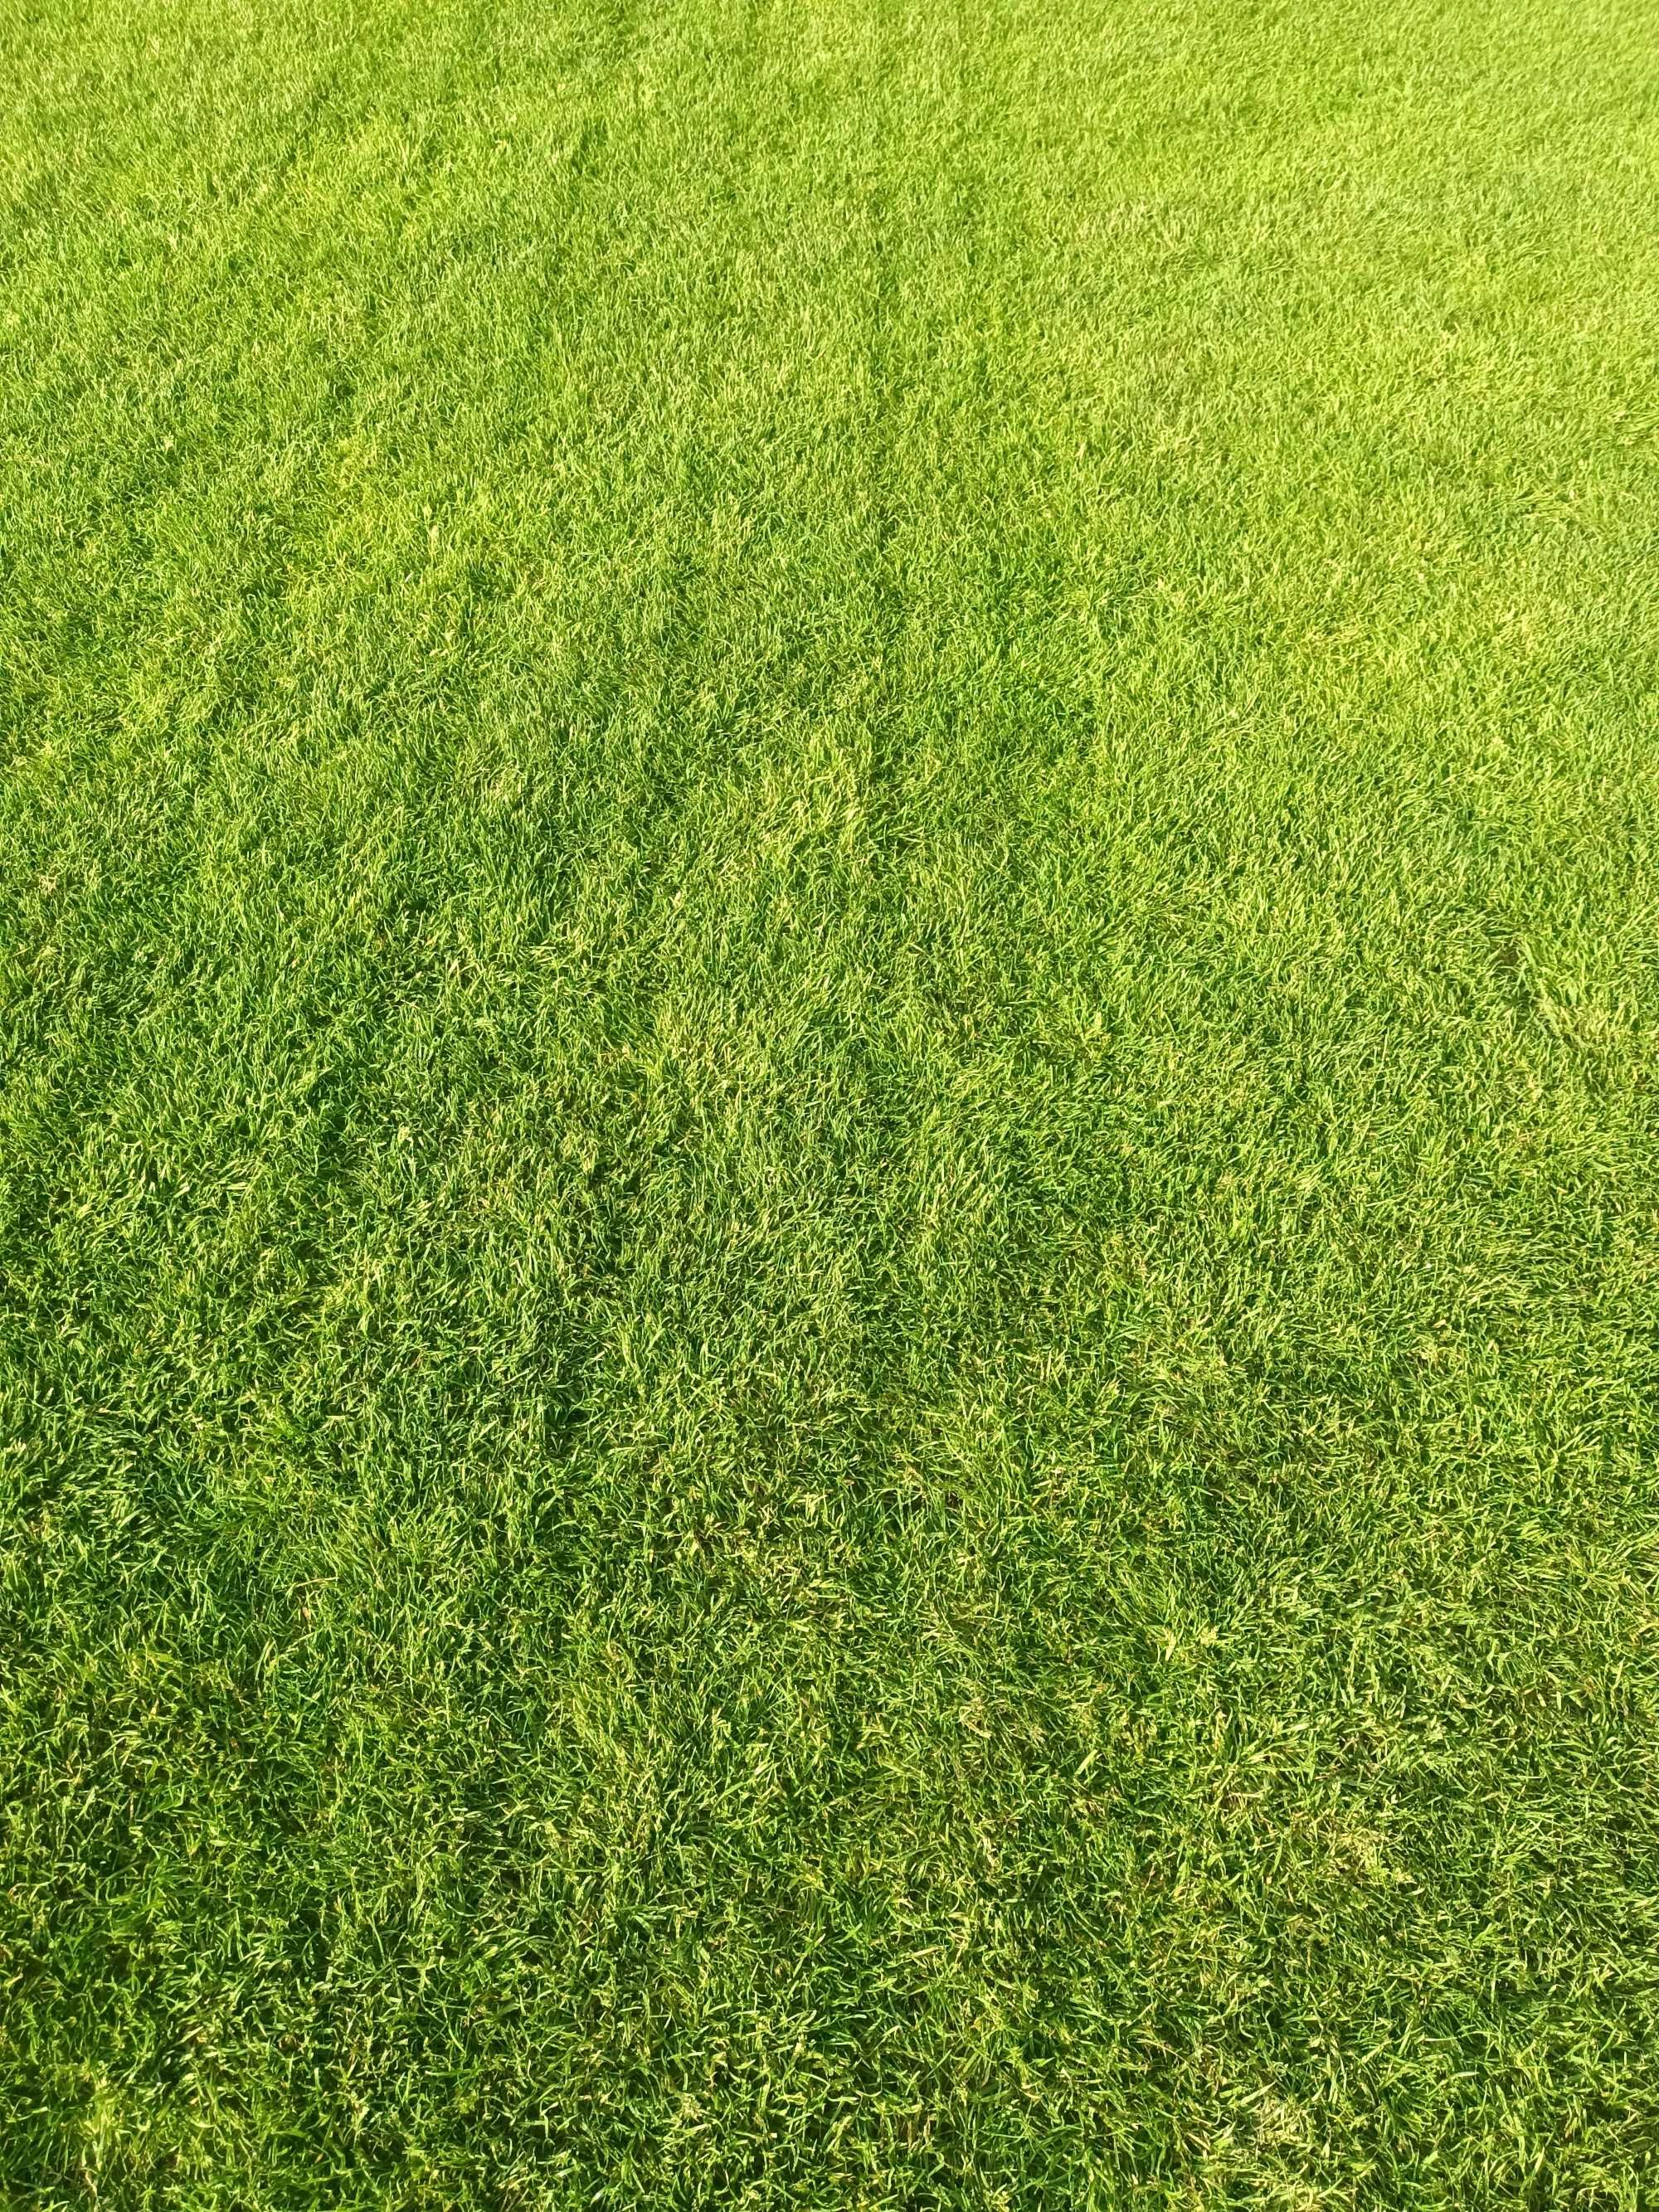 Położymy trawę z rolki  15,99zł/m2  - Producent trawy z rolki